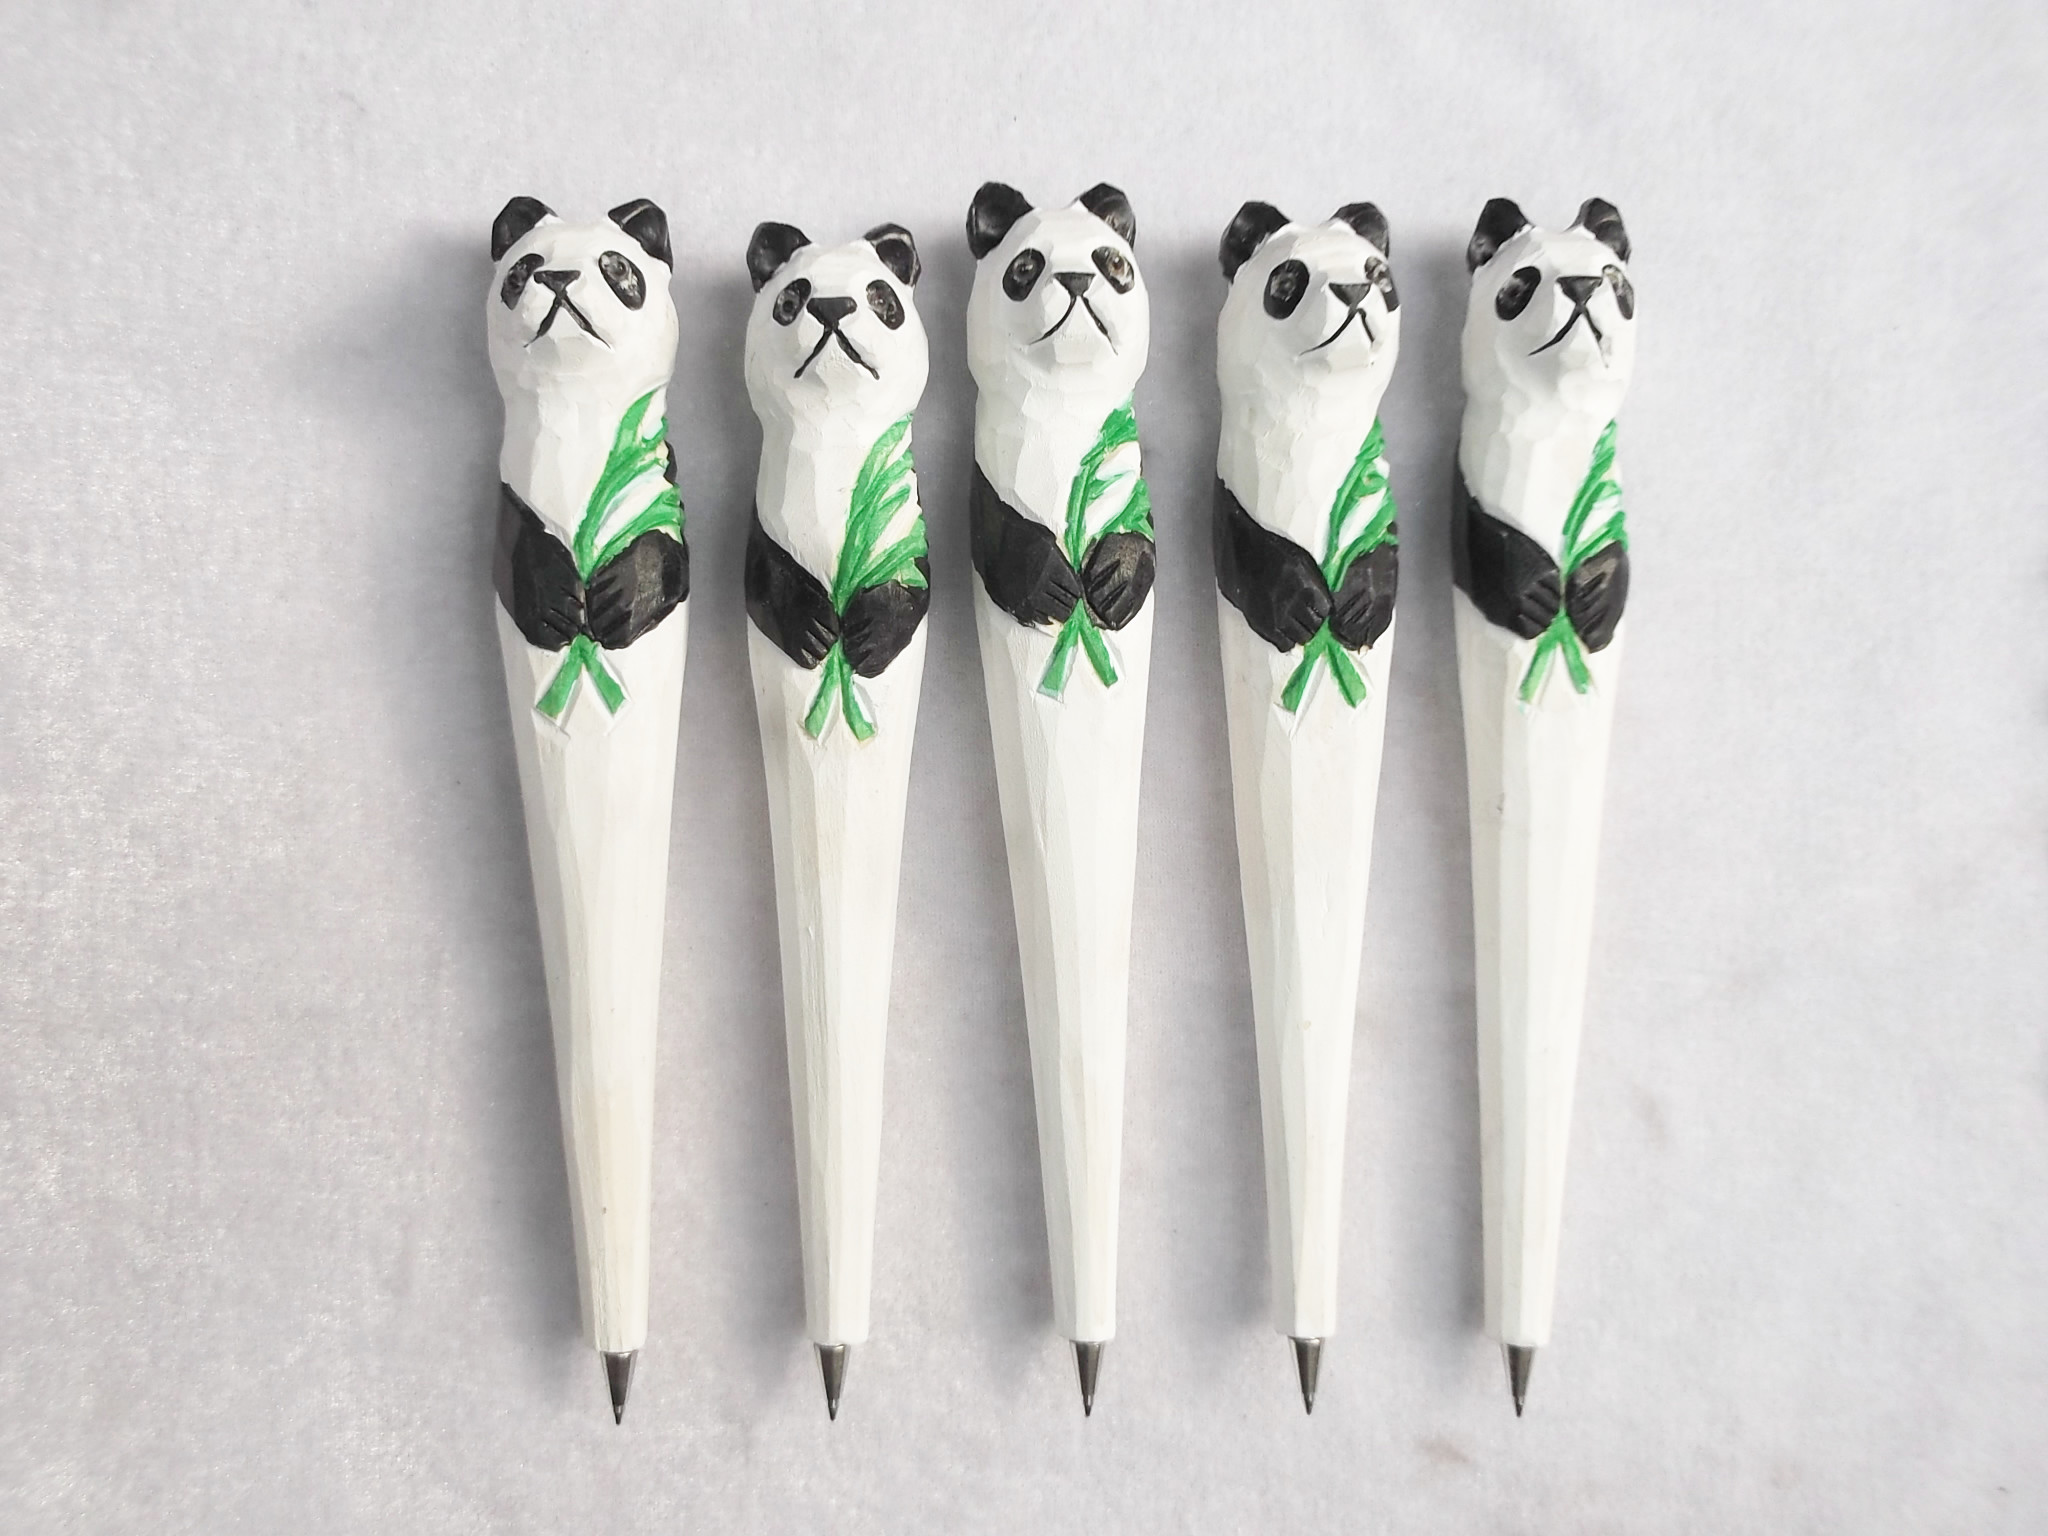 手工制作可爱大熊猫动物笔、生肖笔木质雕刻笔广告礼品笔创意礼品